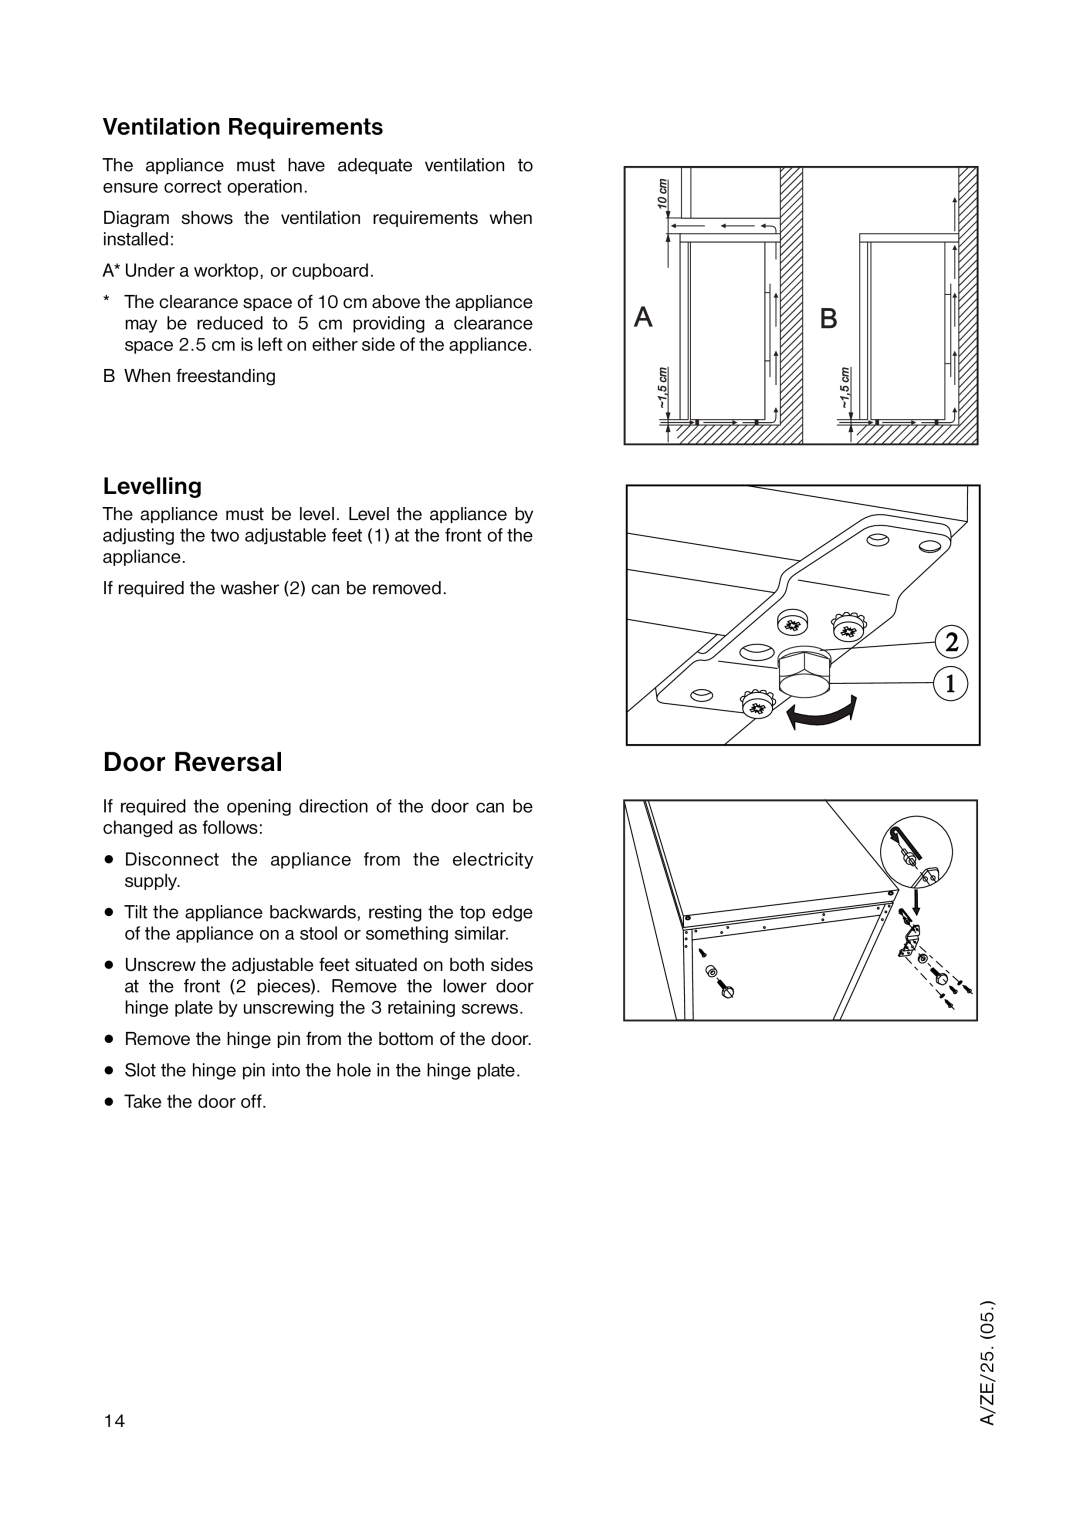 Zanussi ZUT 6246 manual Door Reversal, Ventilation Requirements, Levelling 